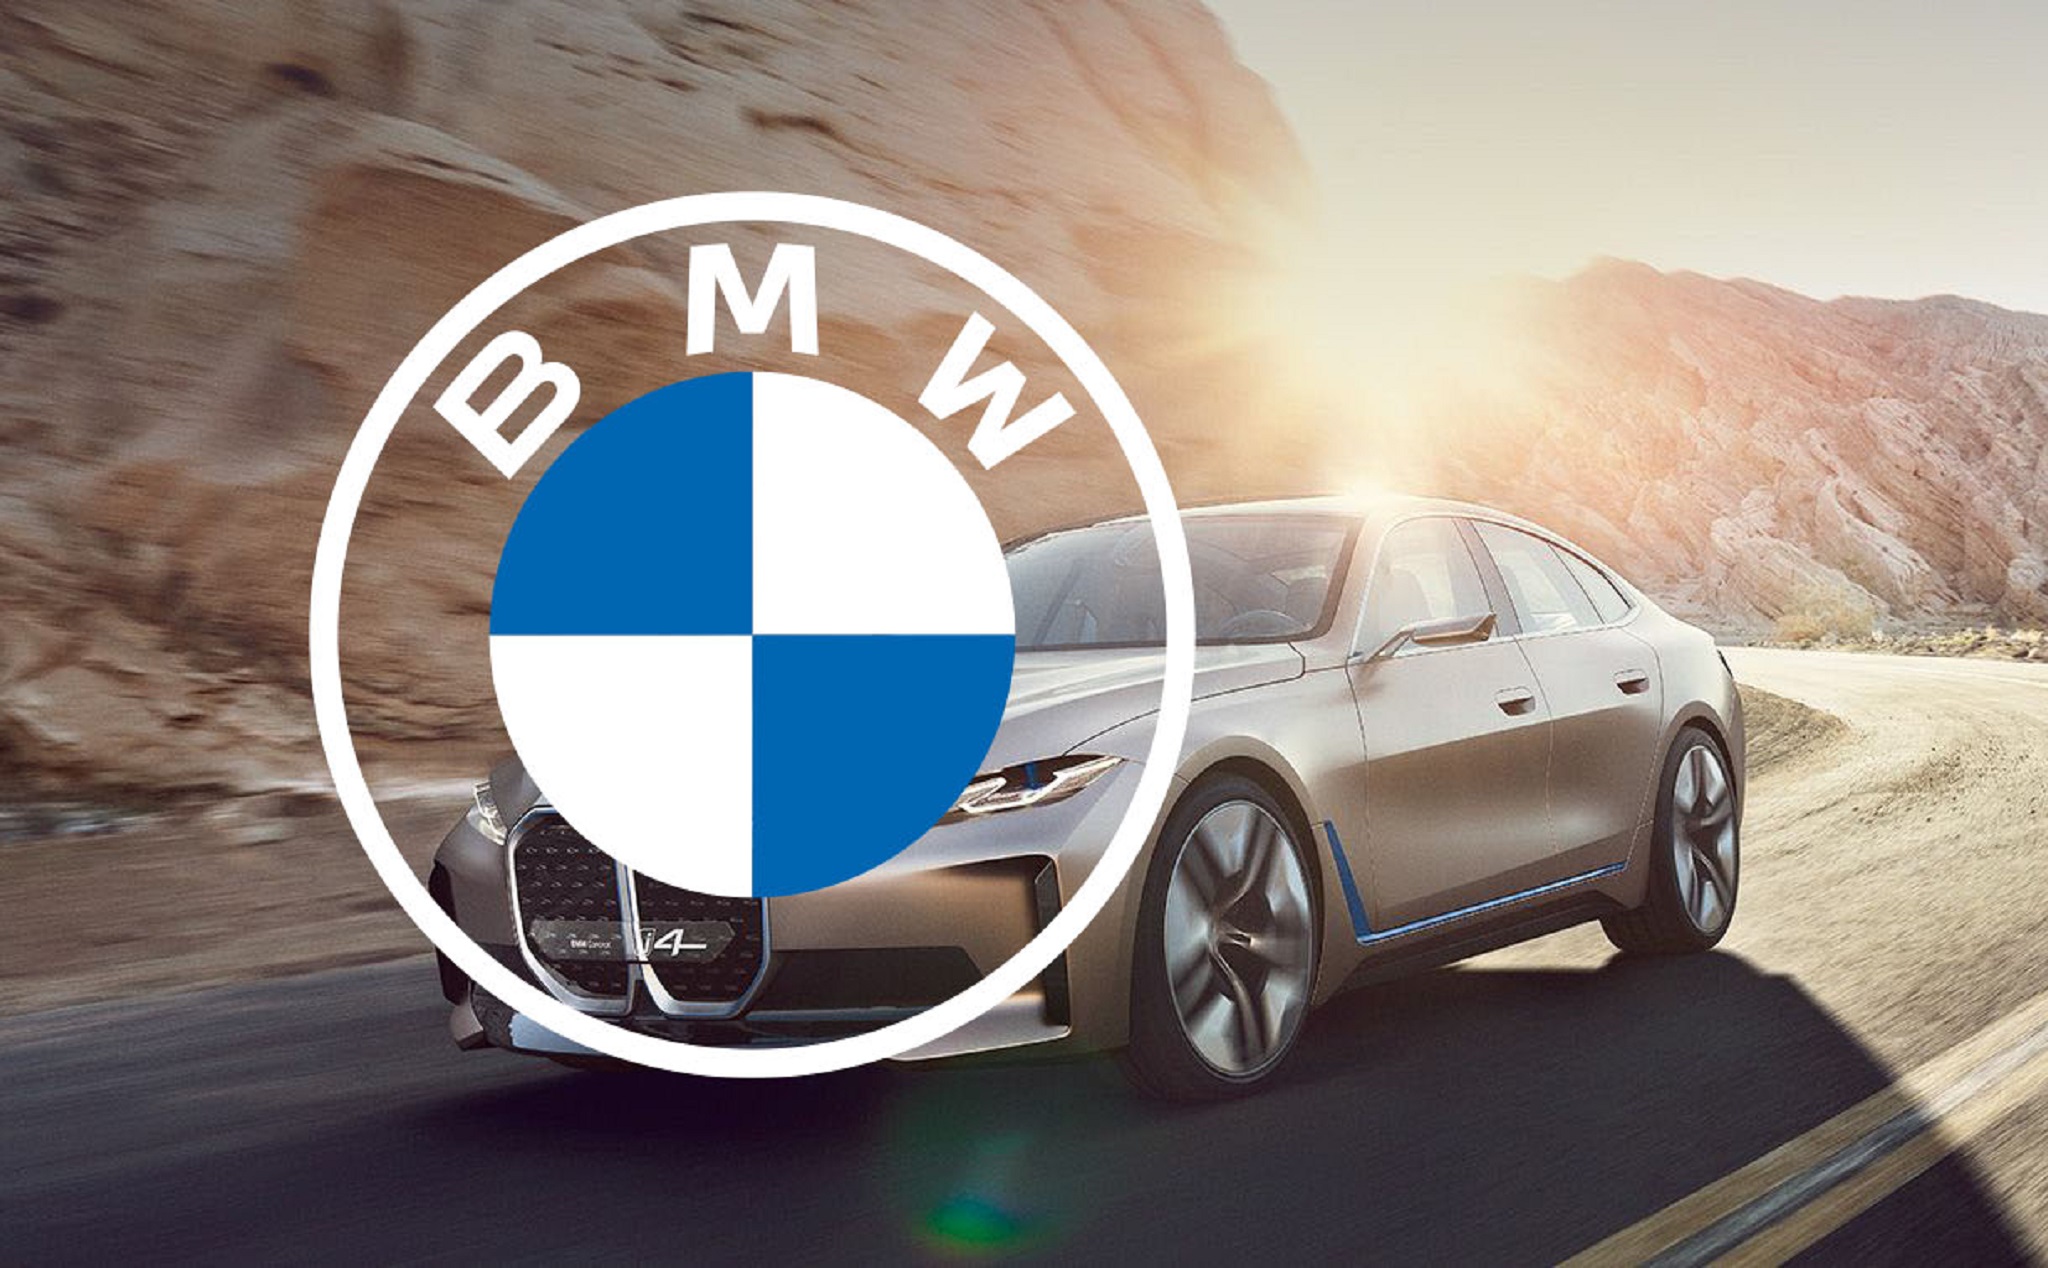 BMW đổi logo mới, thiết kế 2D, chỉ còn 2 màu trắng và xanh